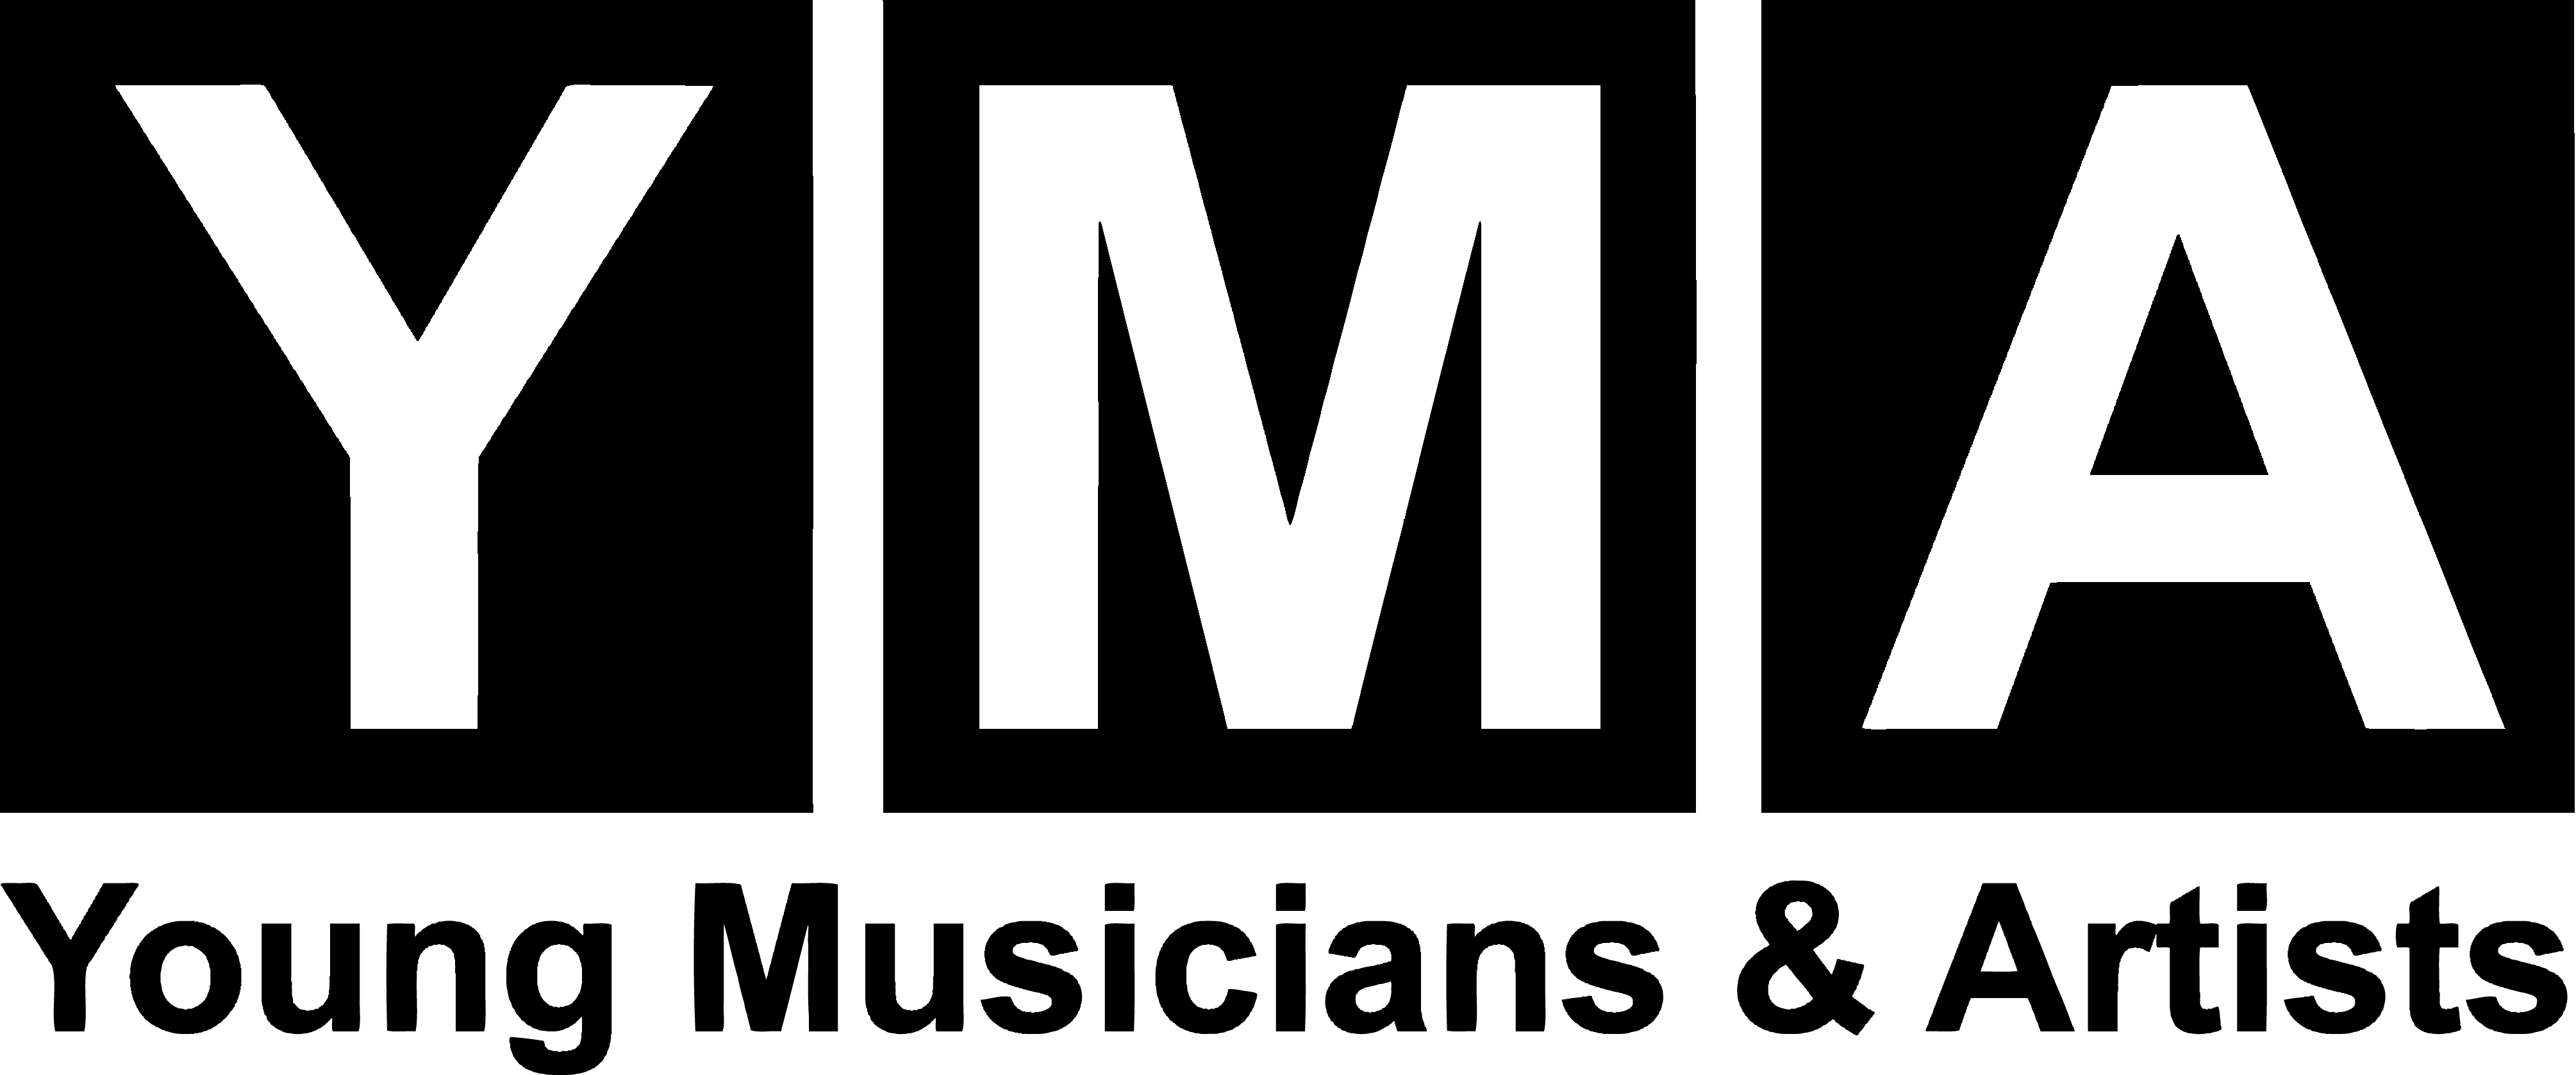 Yma Logo - Young Musicians & Artists - Oregon Cultural TrustOregon Cultural Trust